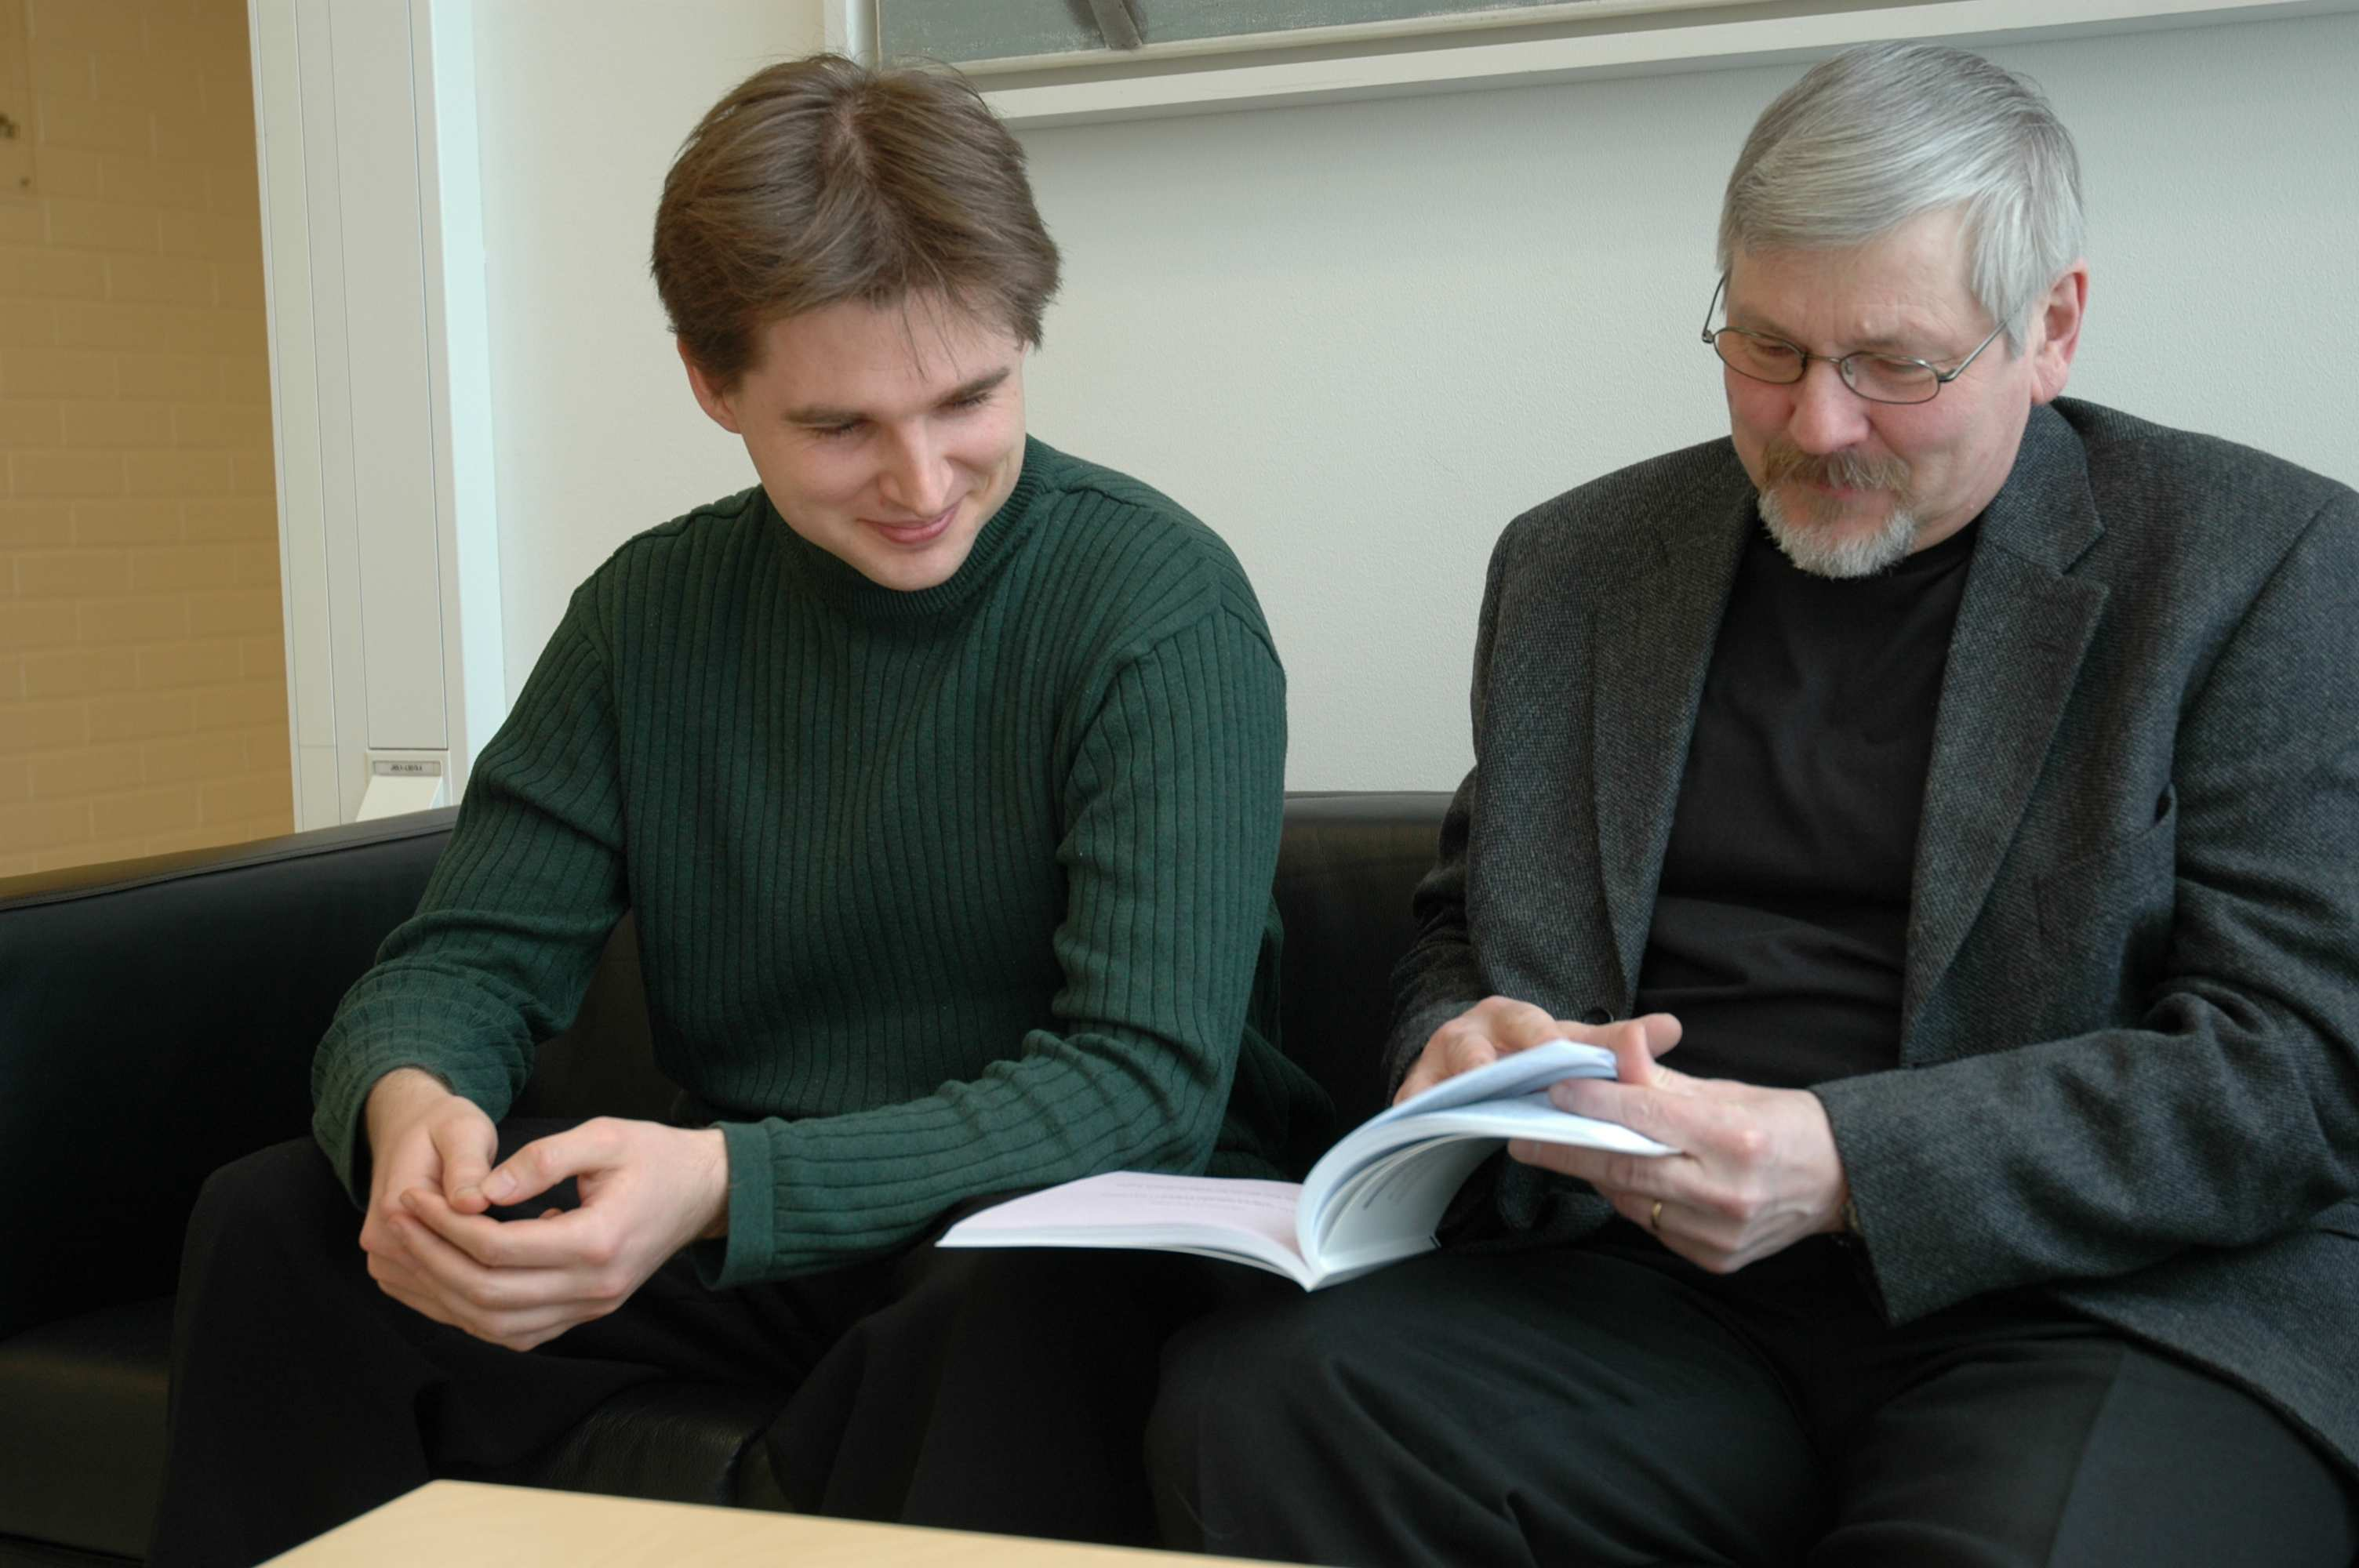 Kuva 9: Mykola Pechenizkiy ja hänen ohjaajansa professori Seppo Puuronen tarkastelevat uunituoretta väitöskirjaa.